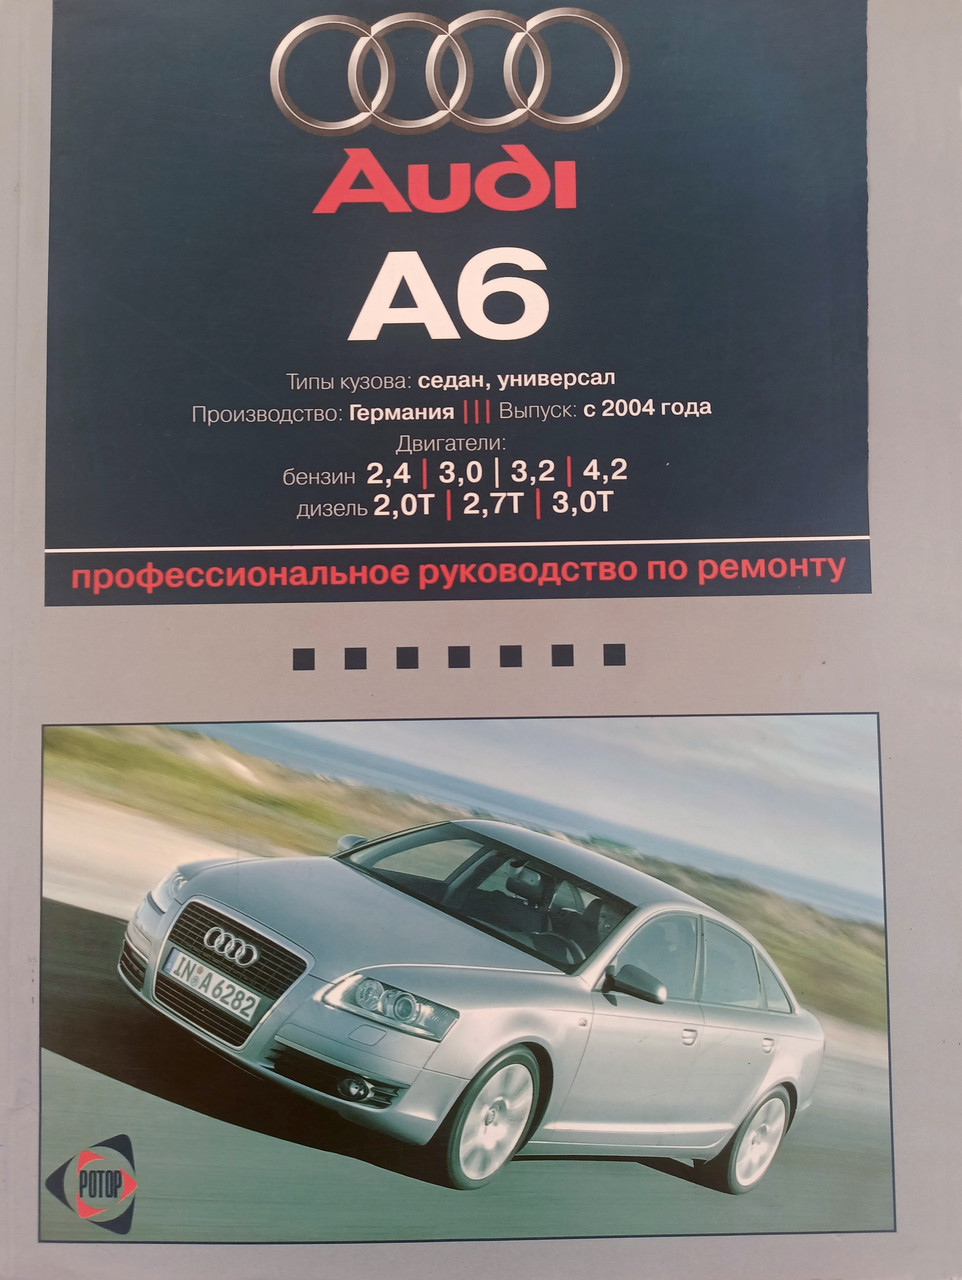 Книги раздела: Audi A6